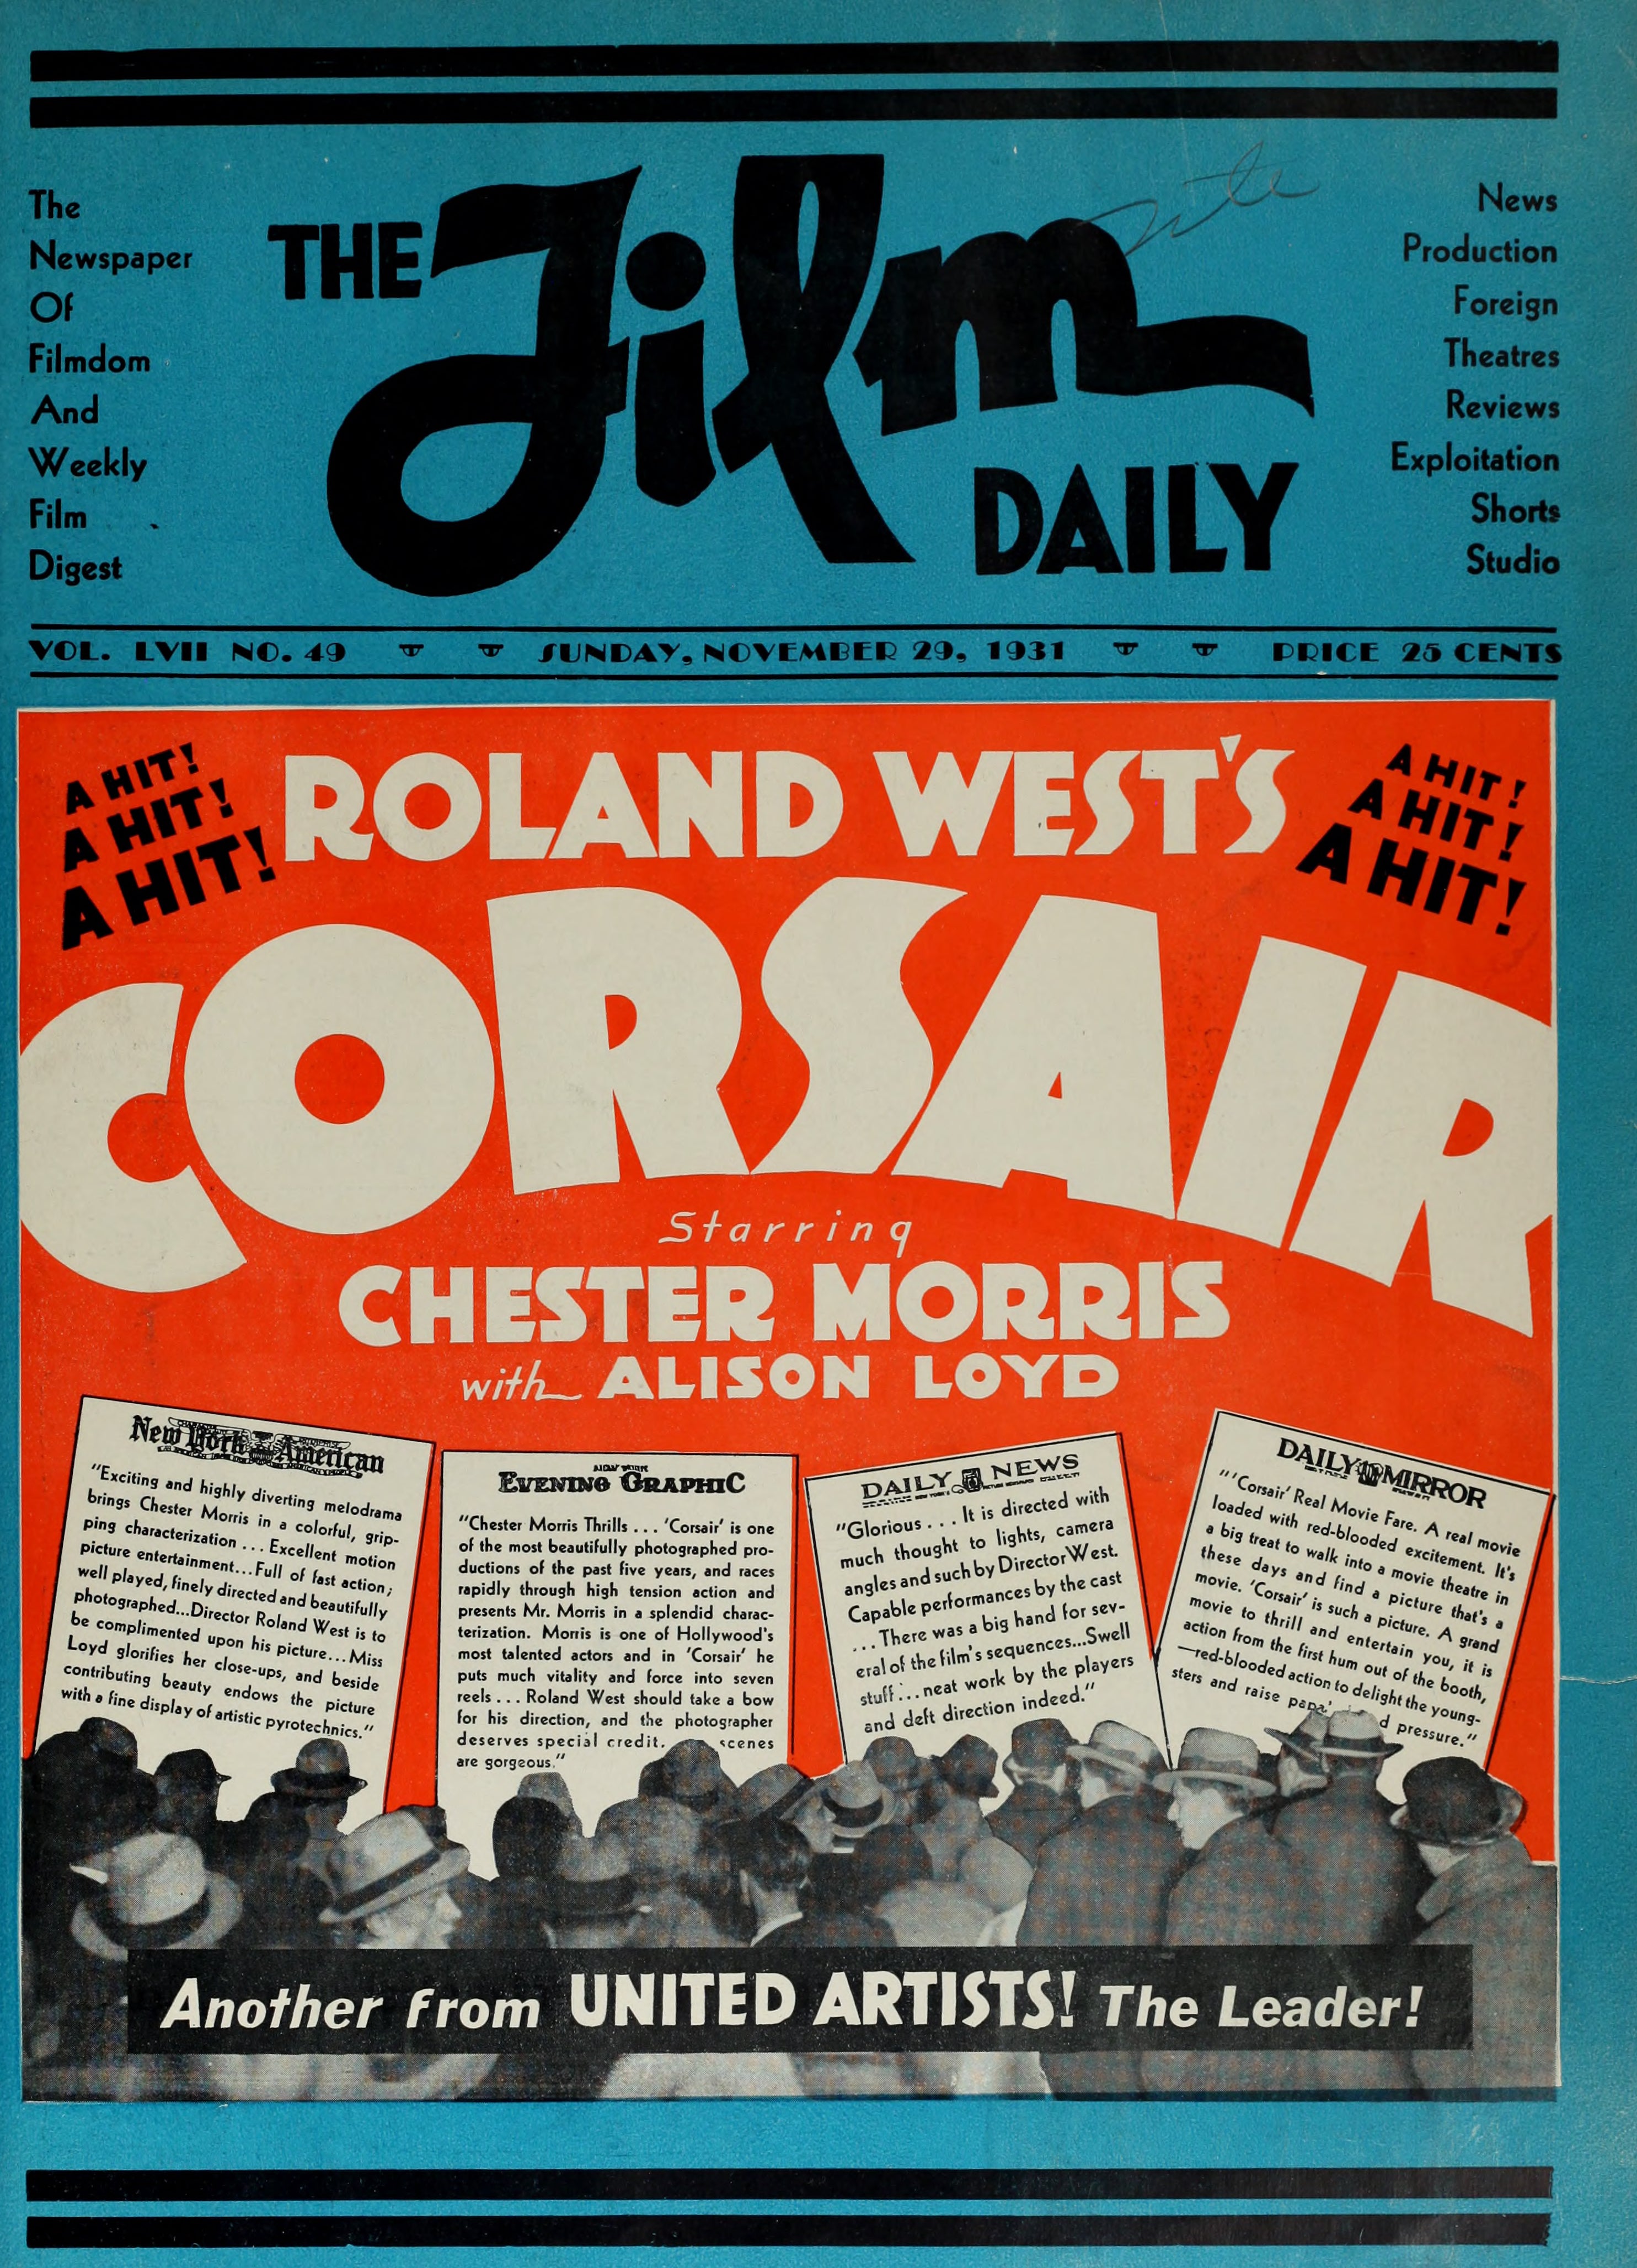 Corsair (1931) | www.vintoz.com